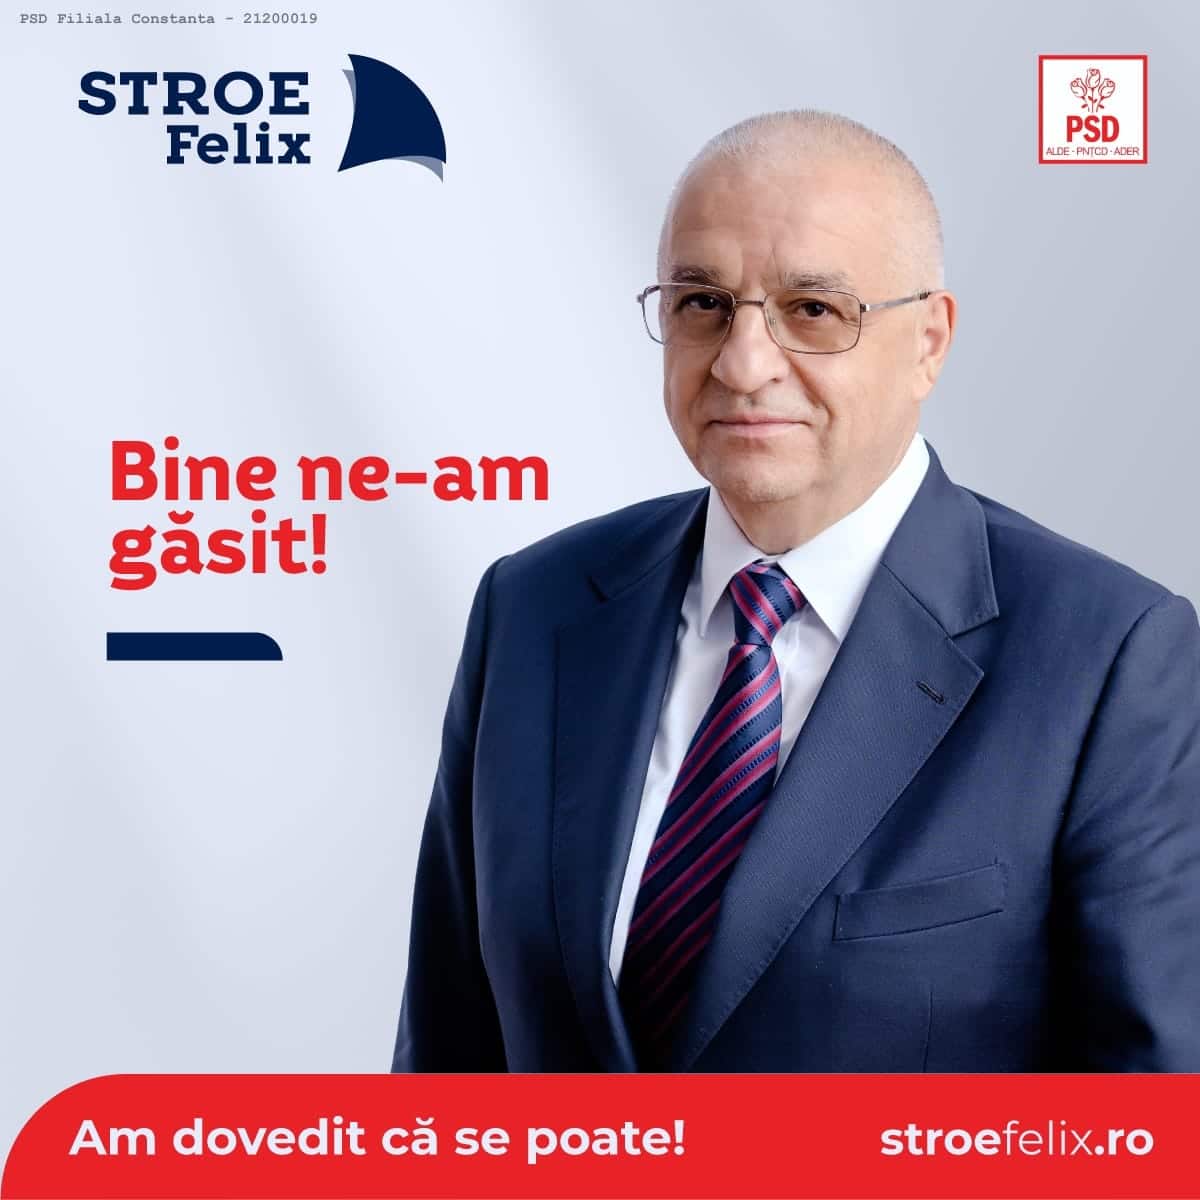 Felix Stroe, președintele PSD Constanța, și-a făcut pagină oficială pe Facebook